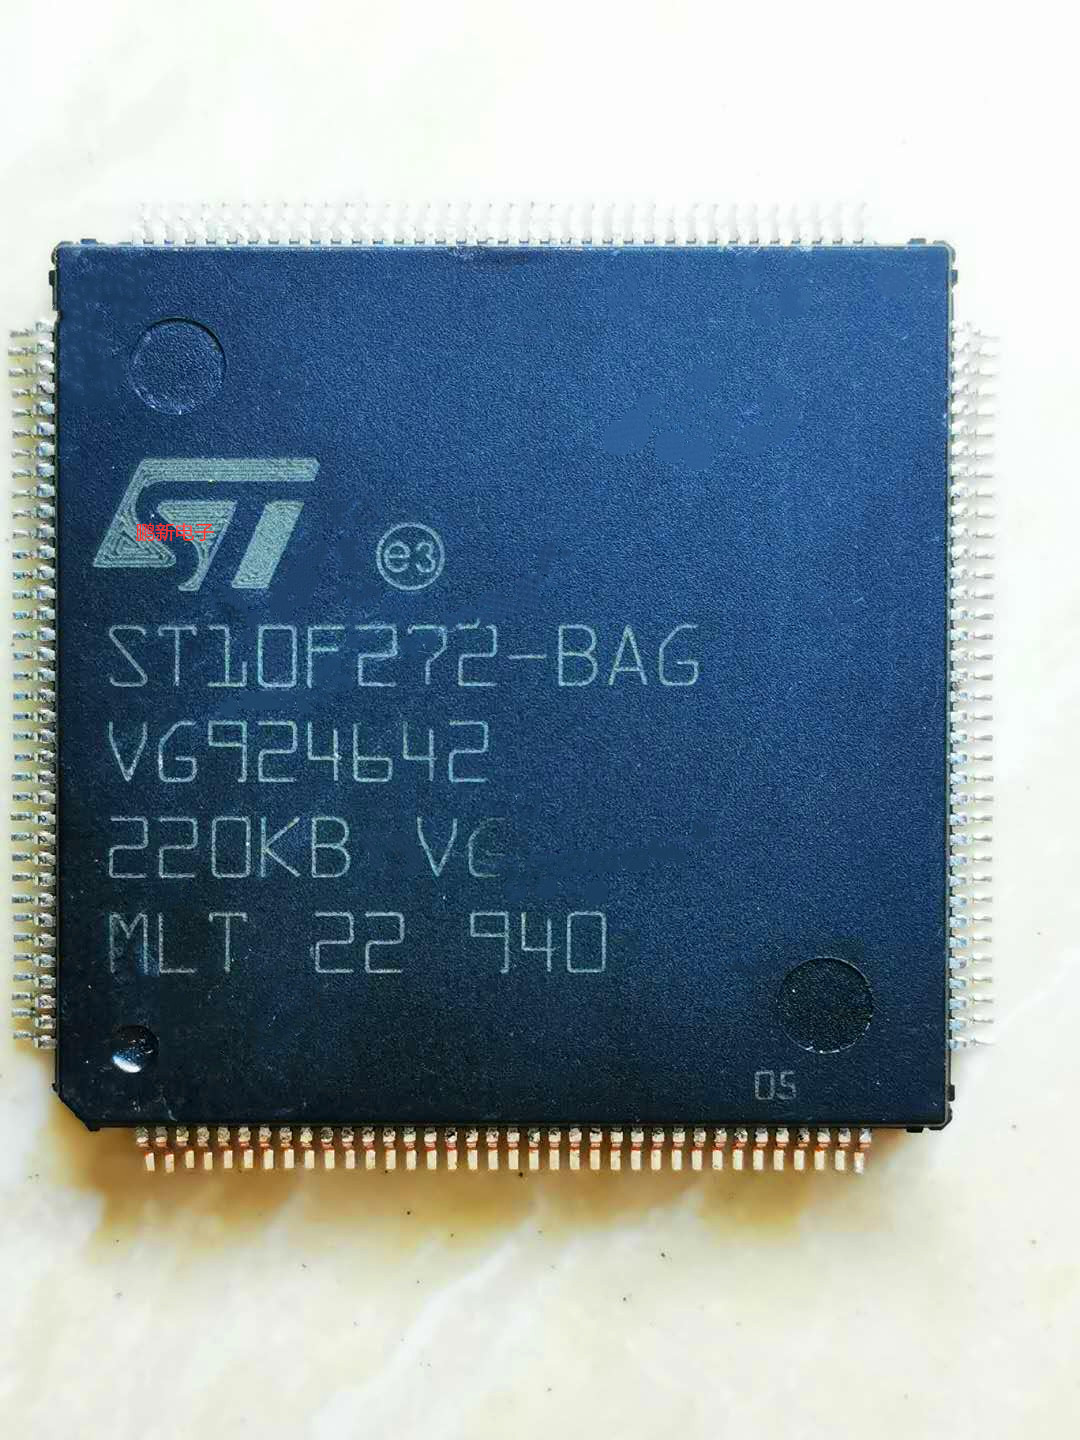 集成IC电路芯片ST10F272-BAG 奥迪A6L及Q7BOSE功放易损CPU